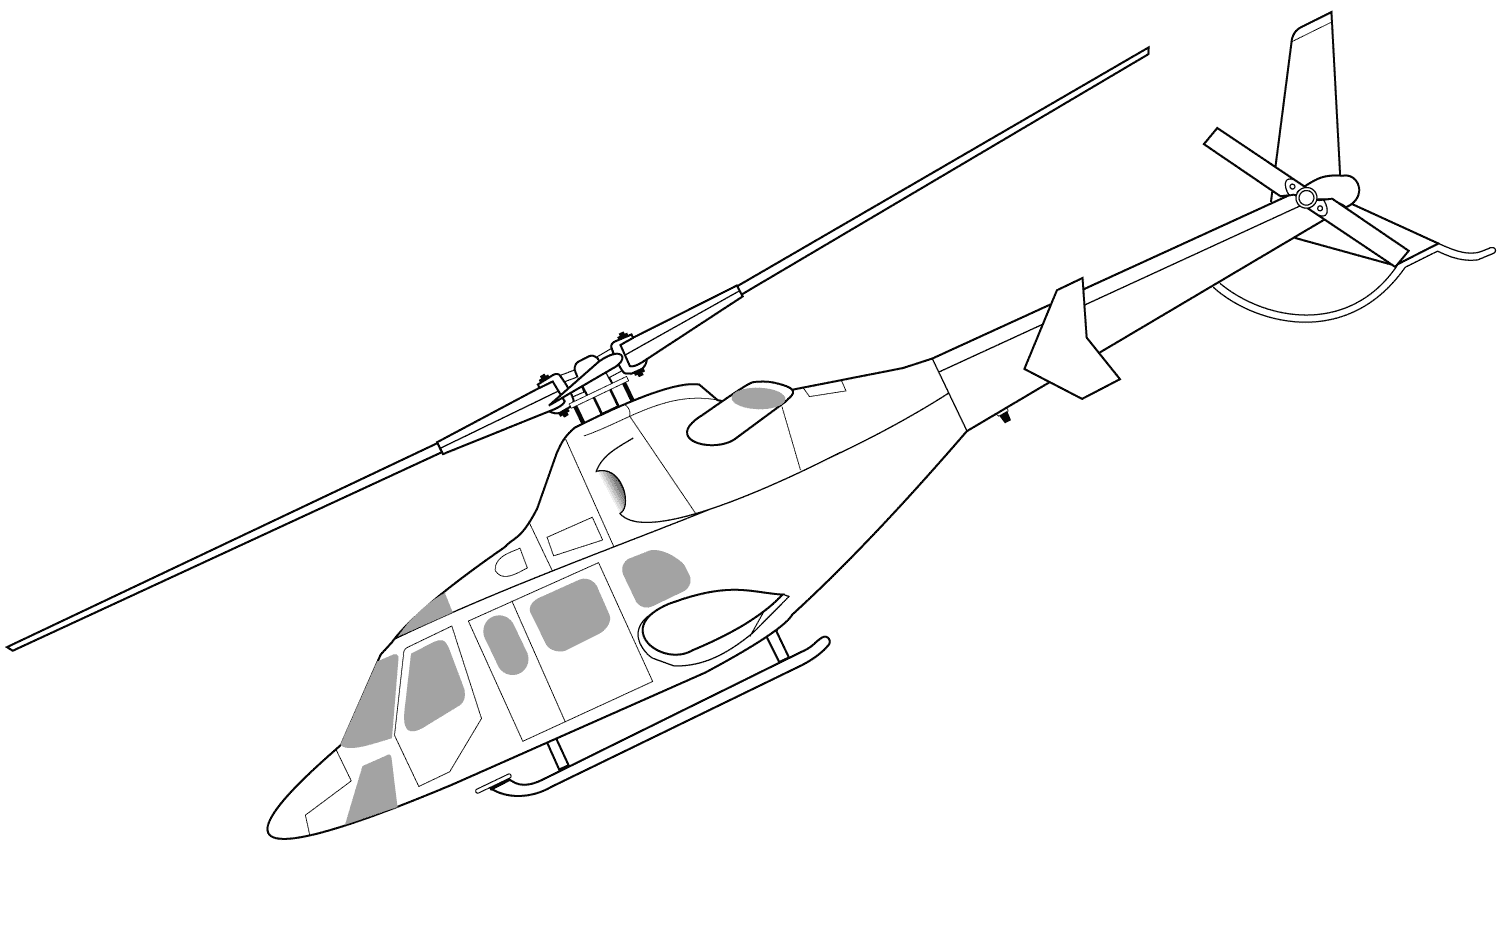 贝尔430直升机